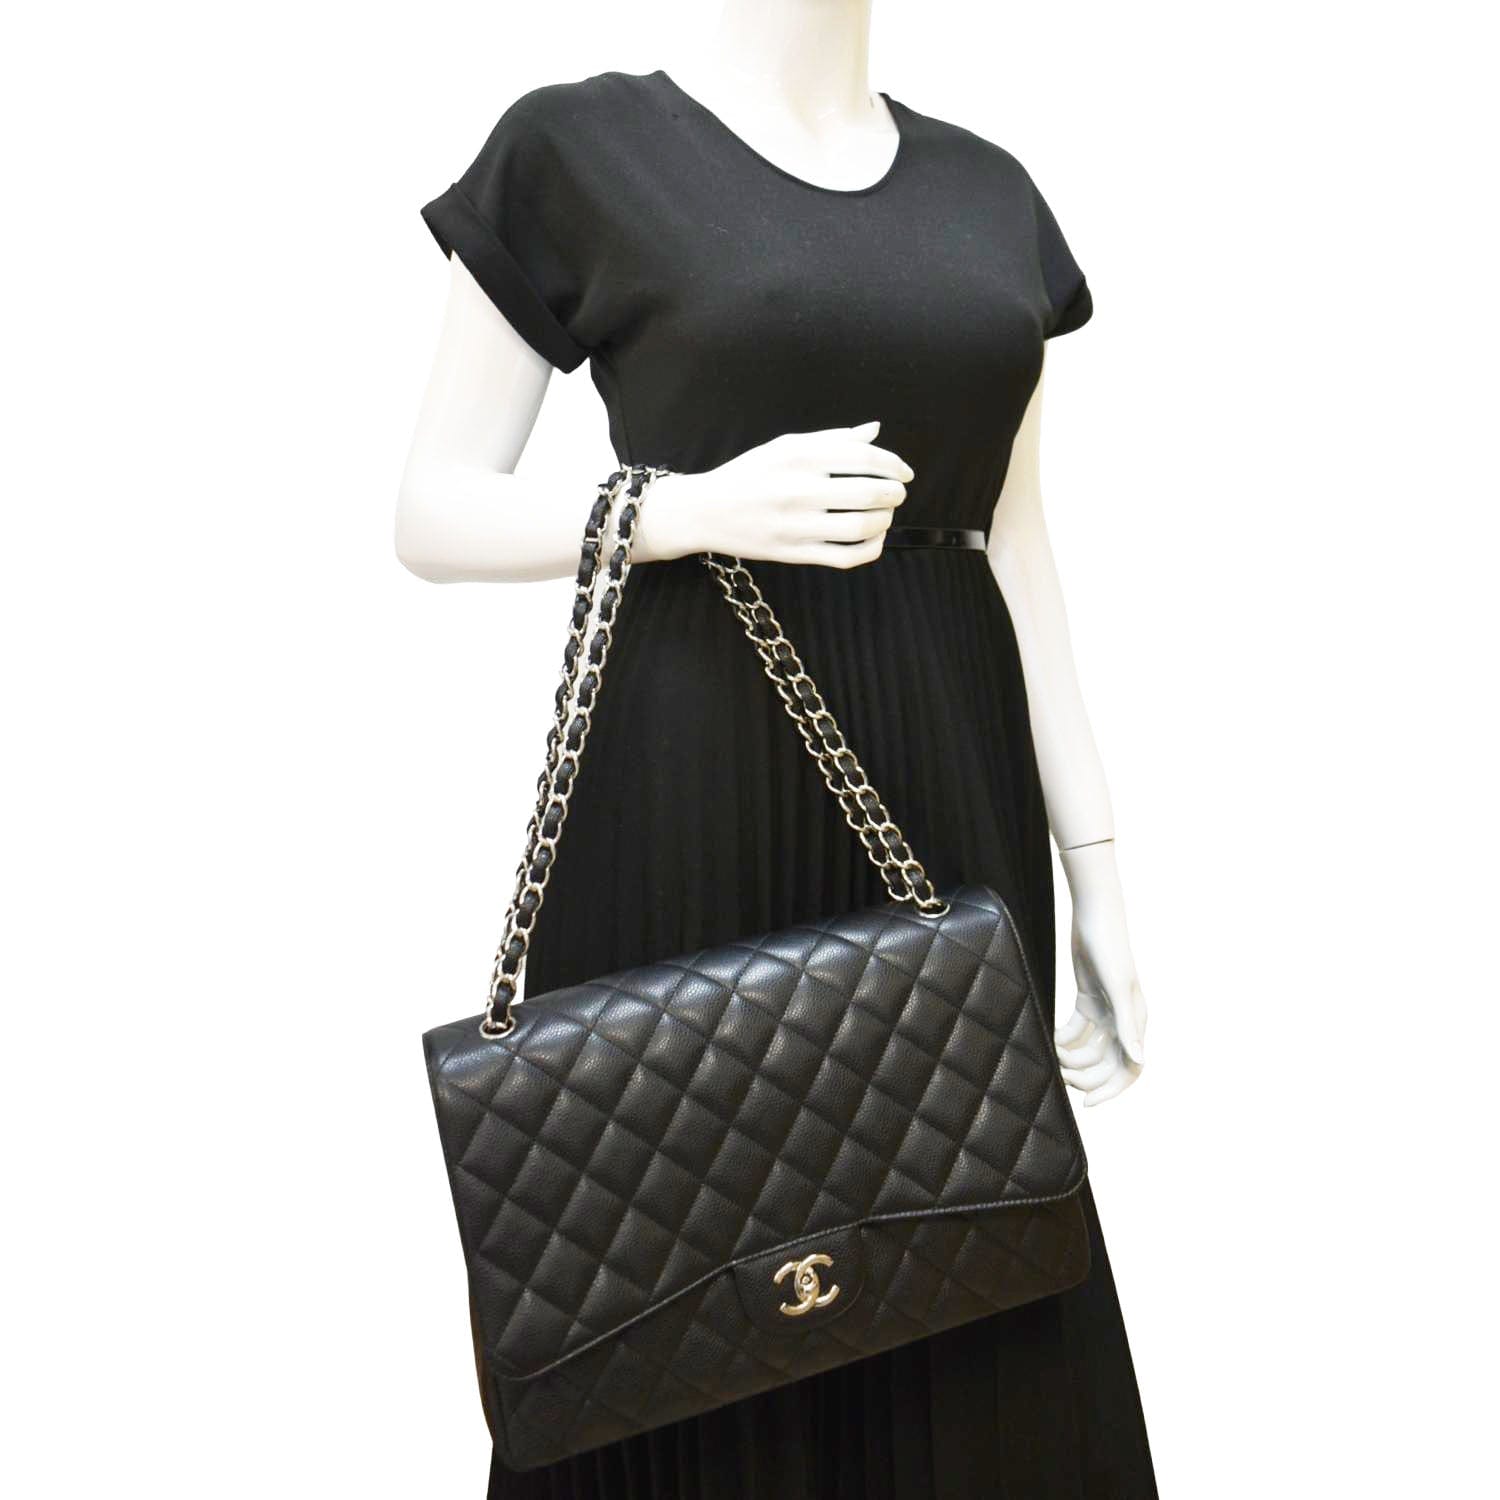 Chanel Classic Jumbo Double Flap Shoulder Bag